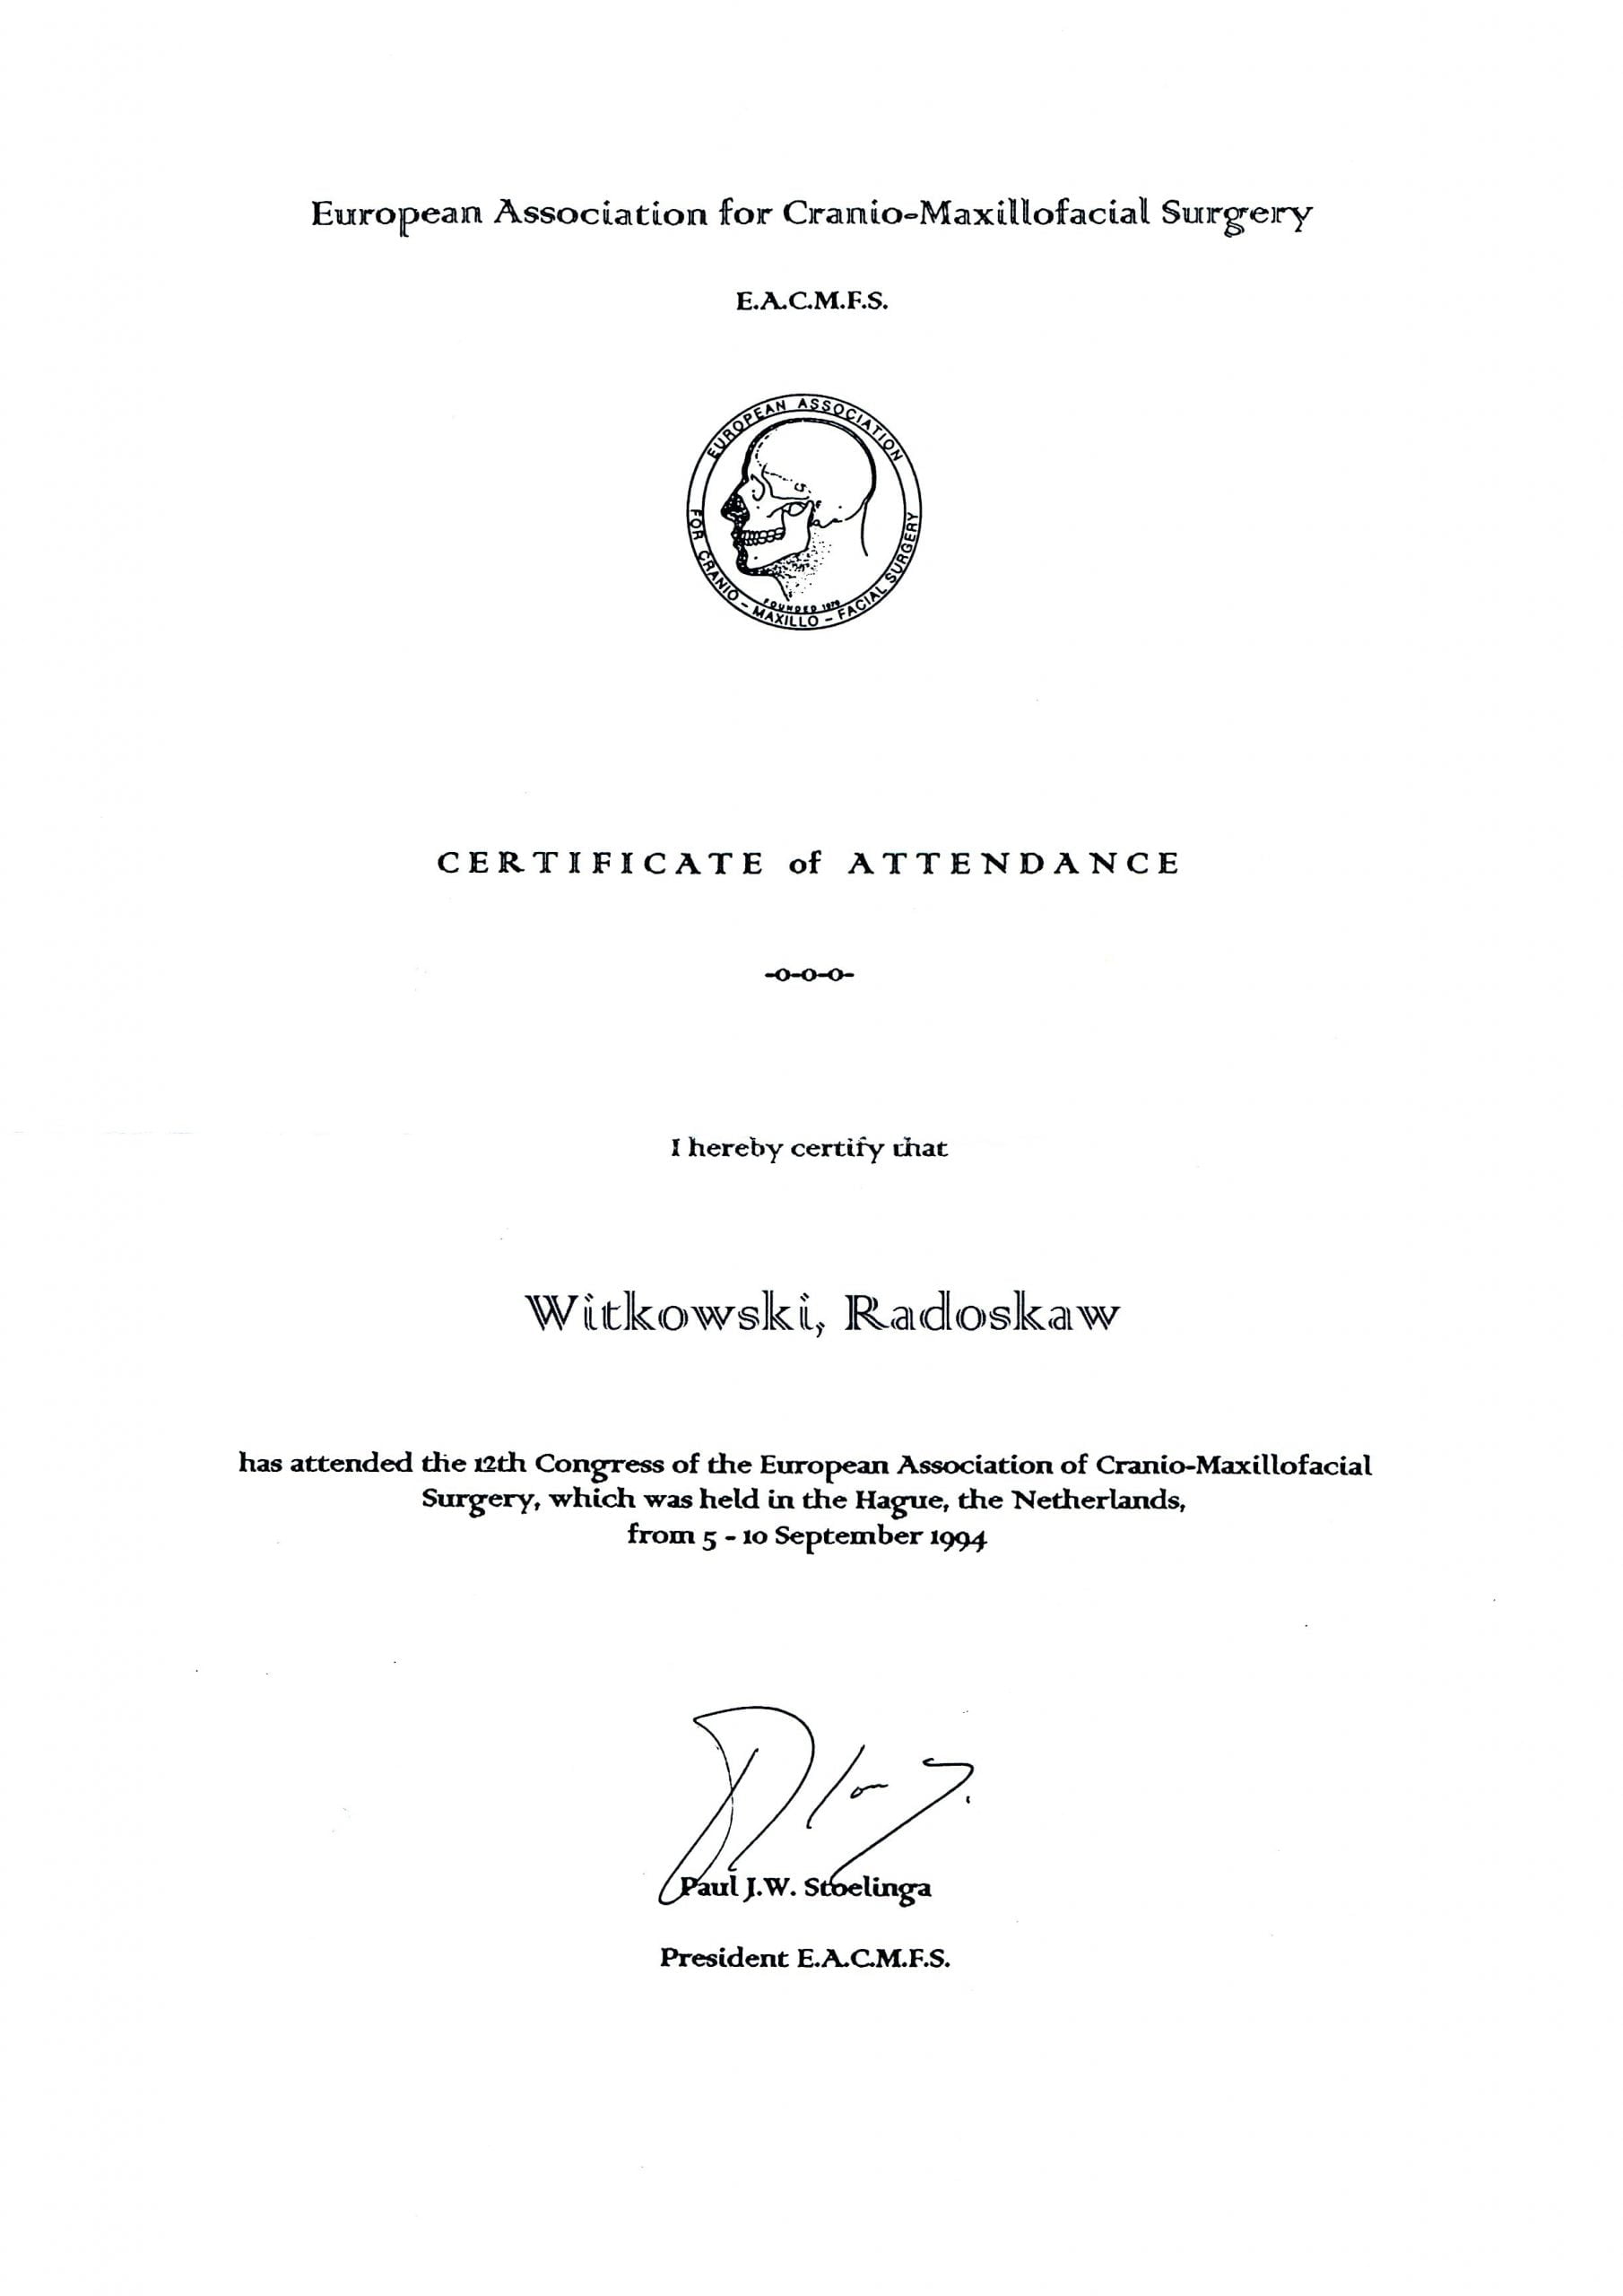 Radosław Witkowski certyfikat 2